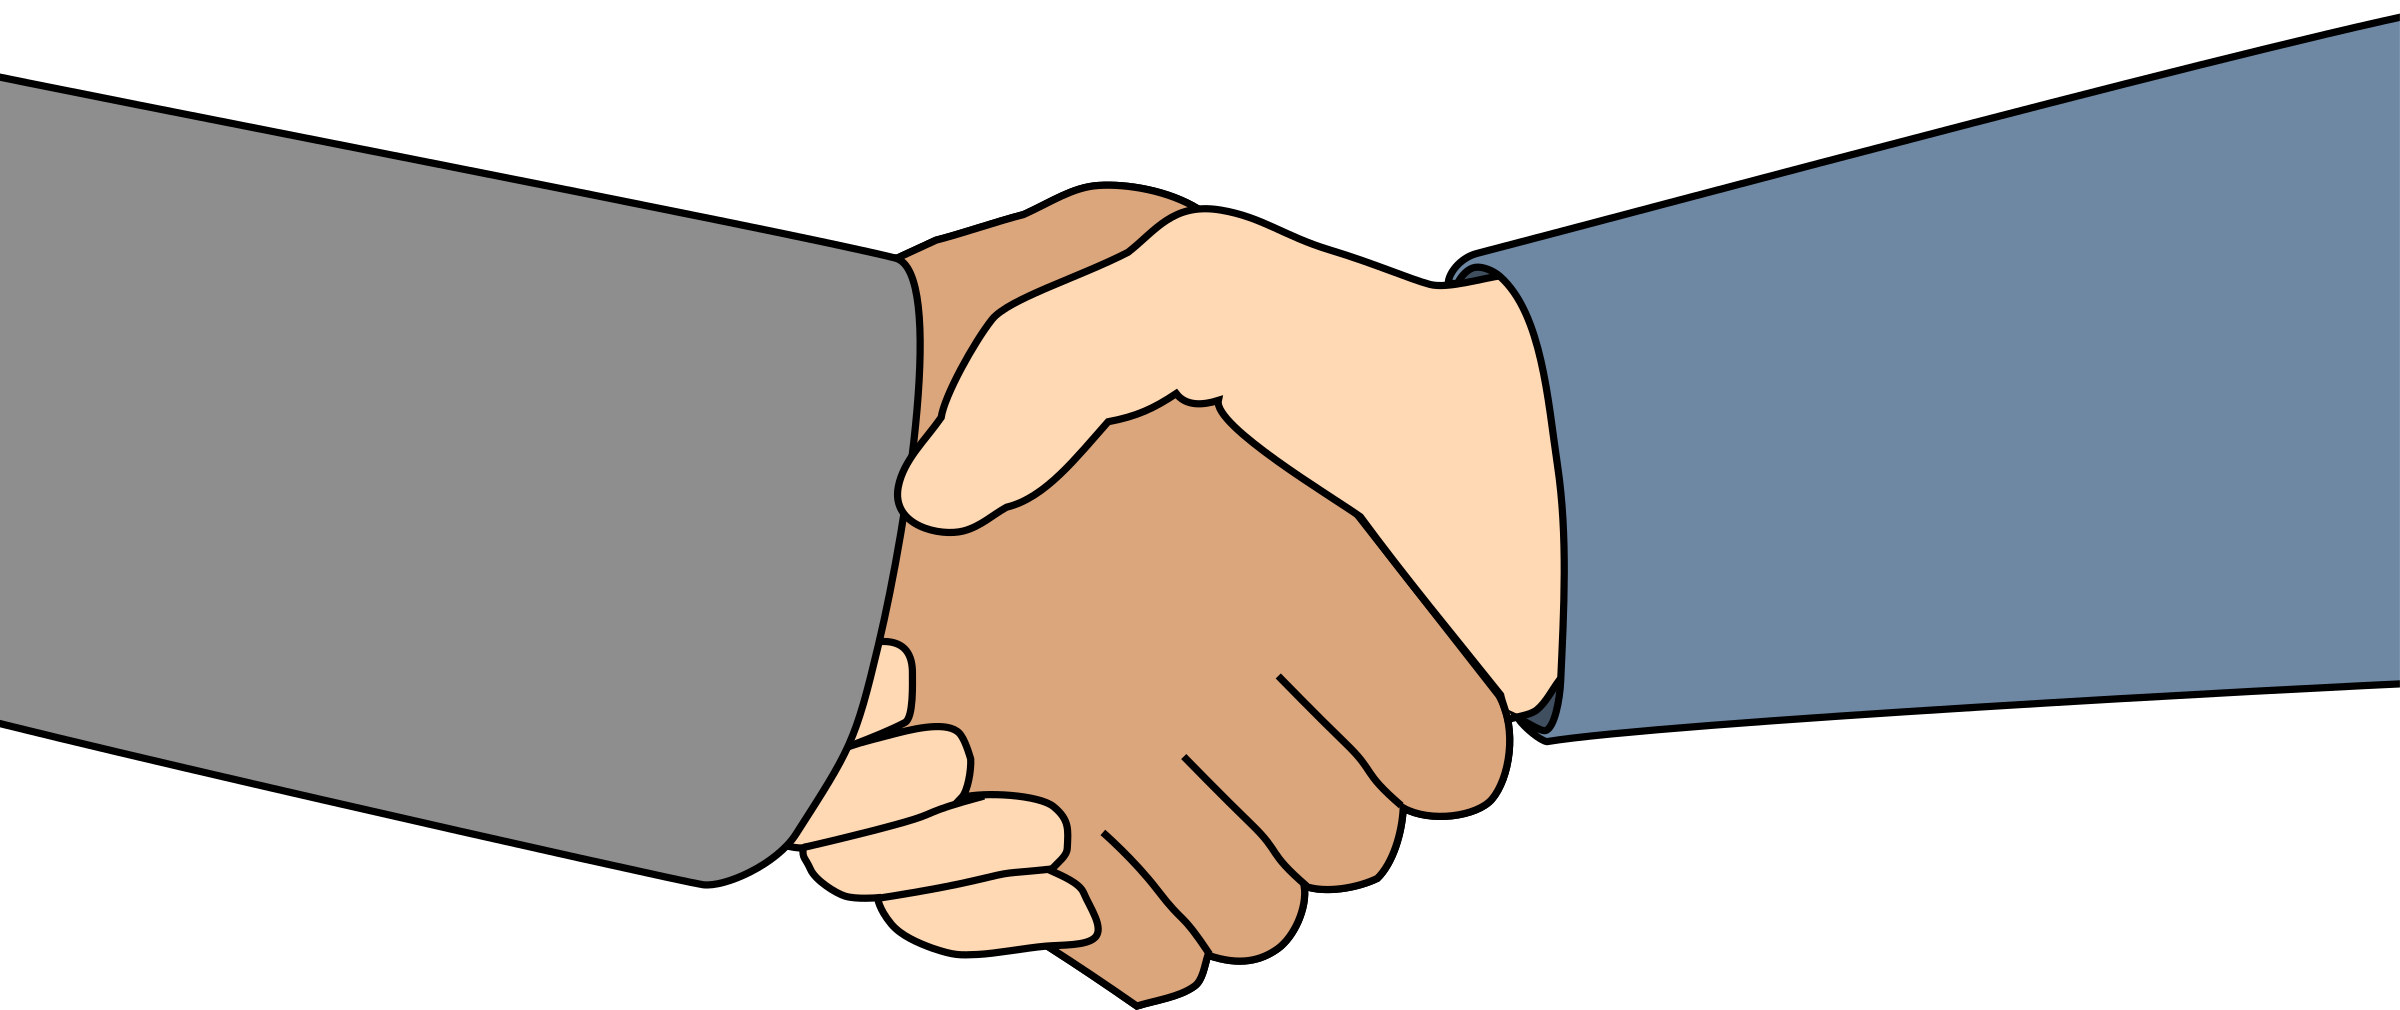 Handshake cartoon hand shake 